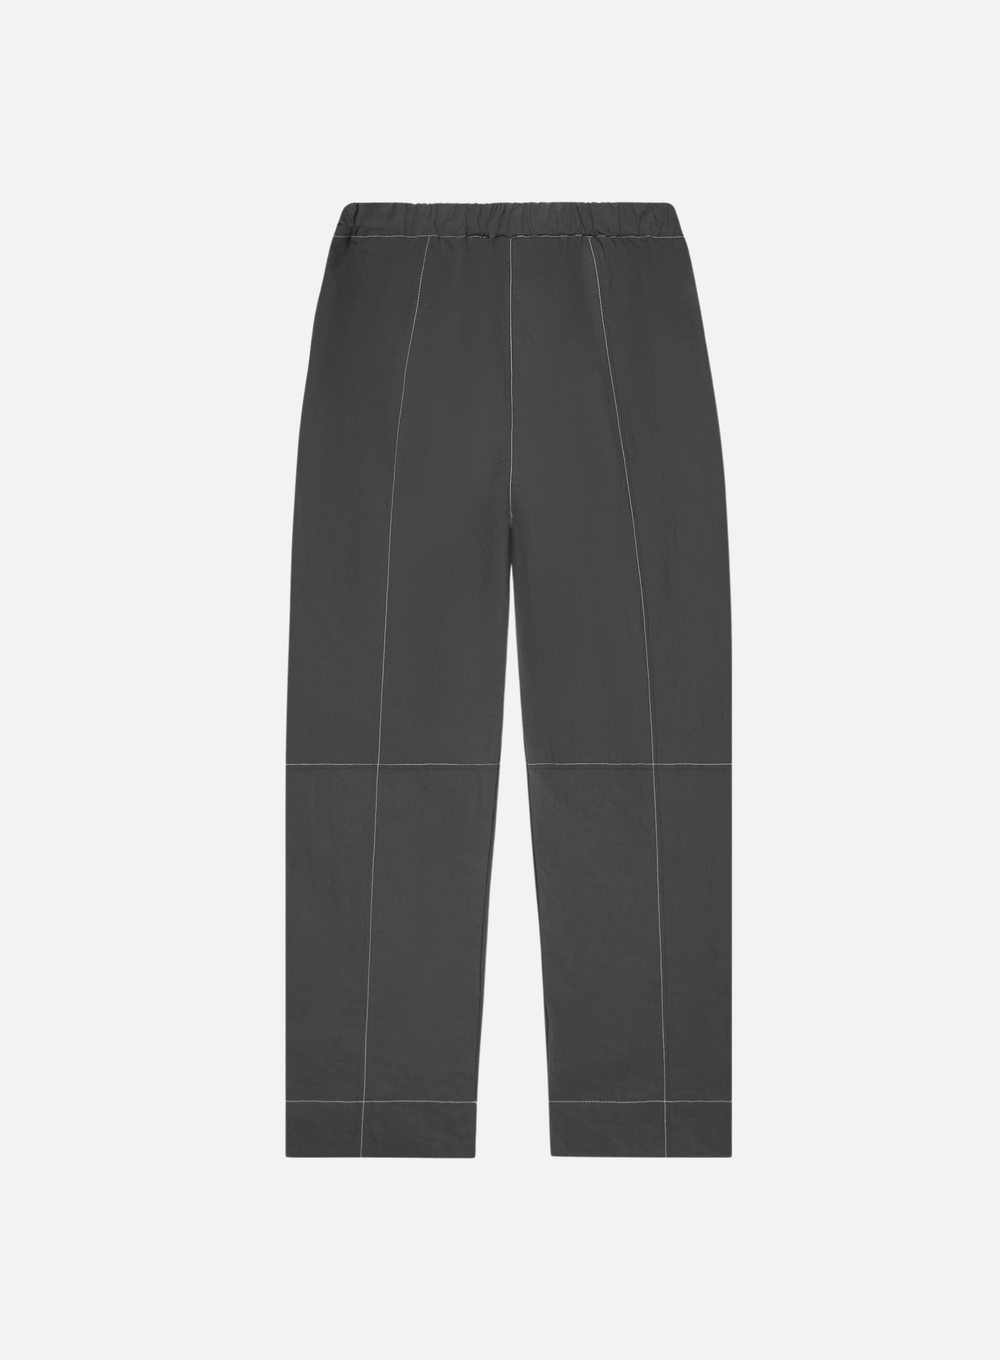 Jungles Patches Suit Pants (Black) — Cafeteria Media